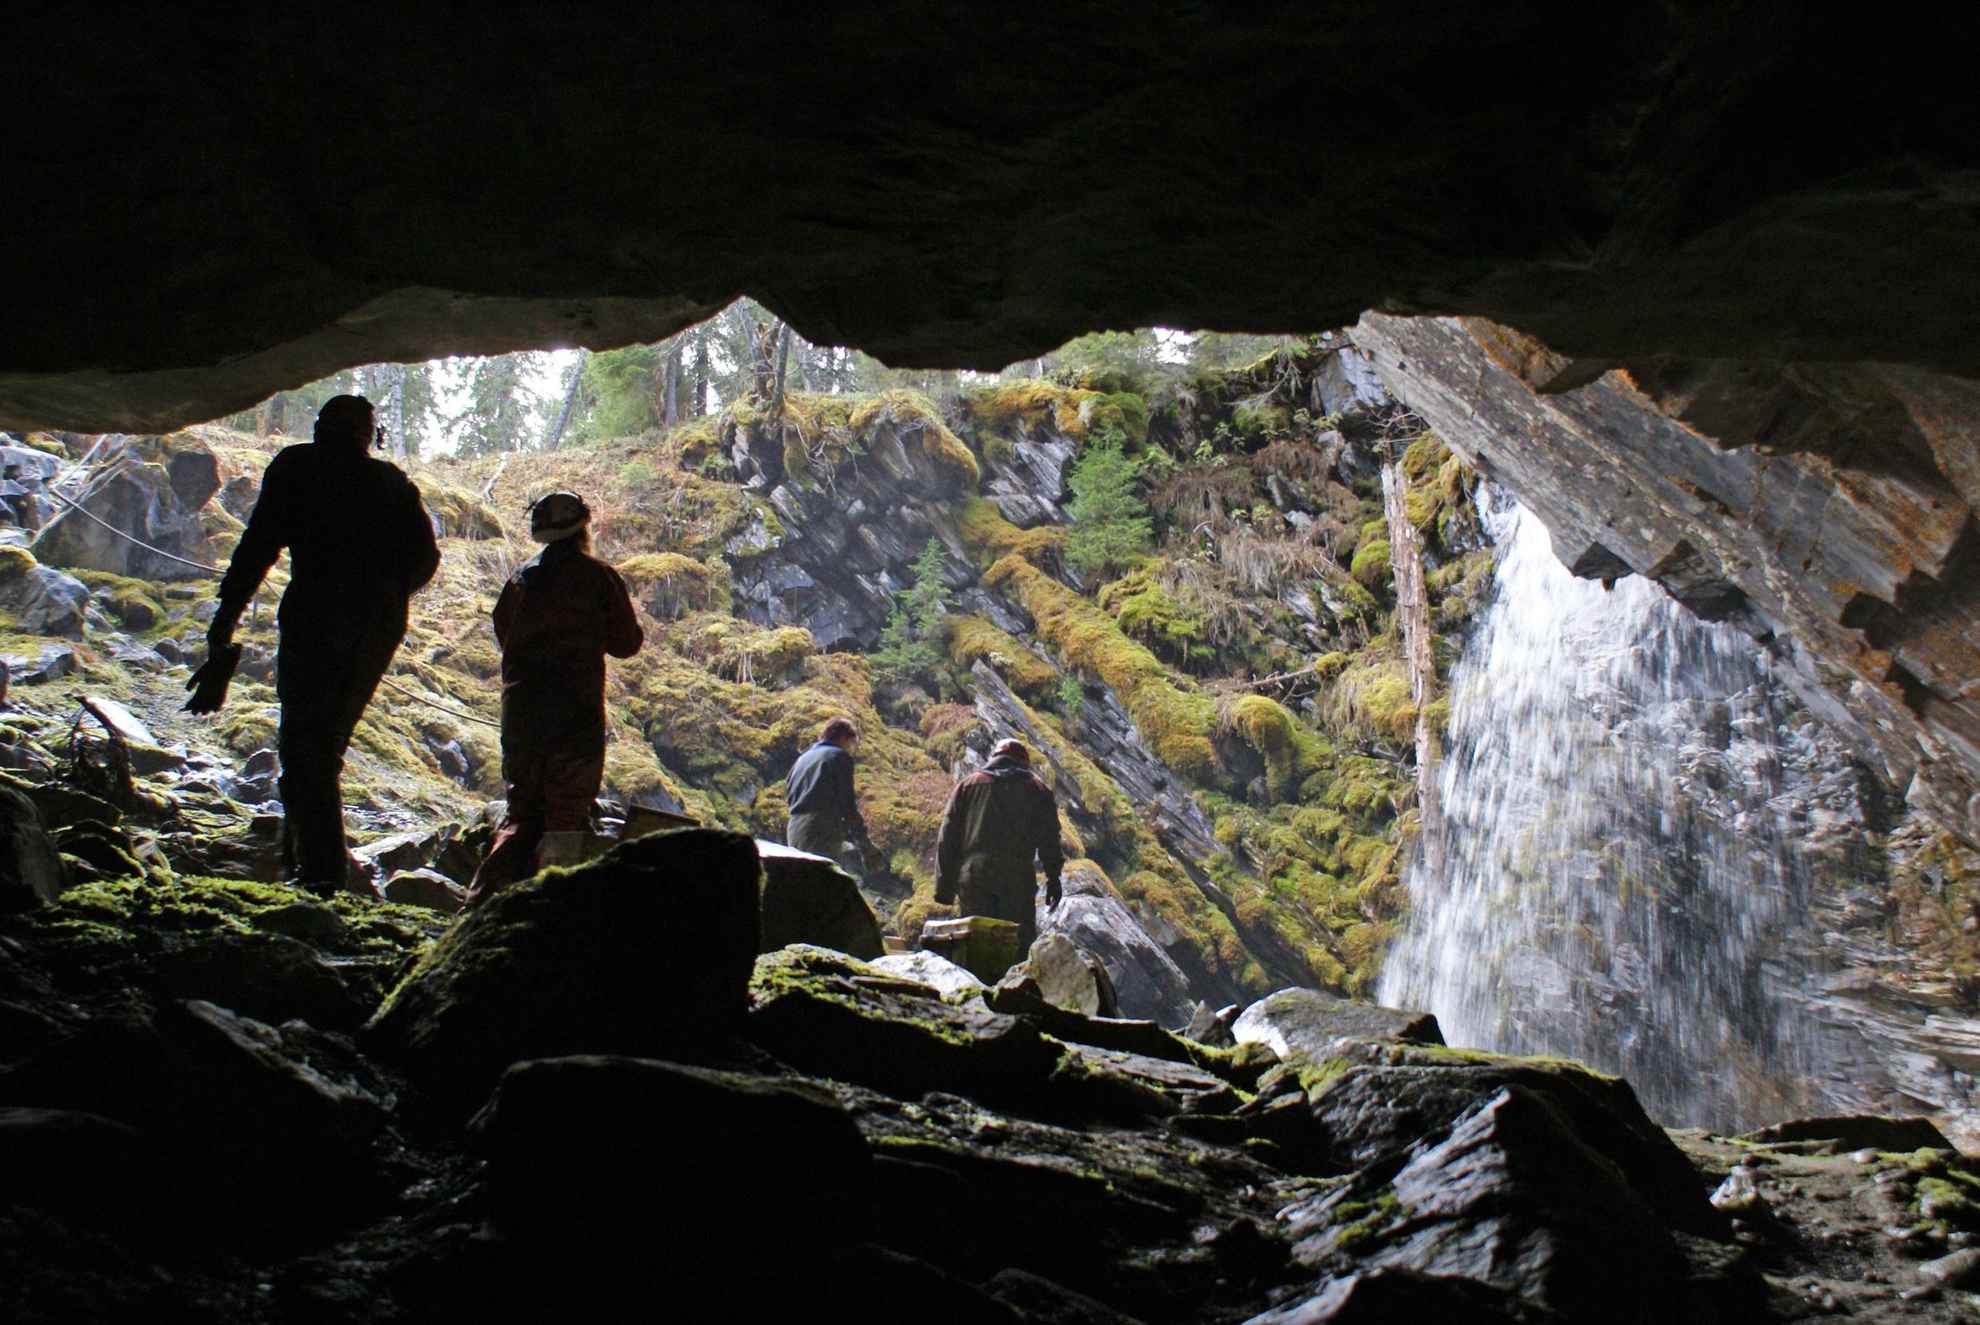 Vue de l'intérieur d'une grotte donnant sur une clairière avec quatre personnes marchant vers une cascade.